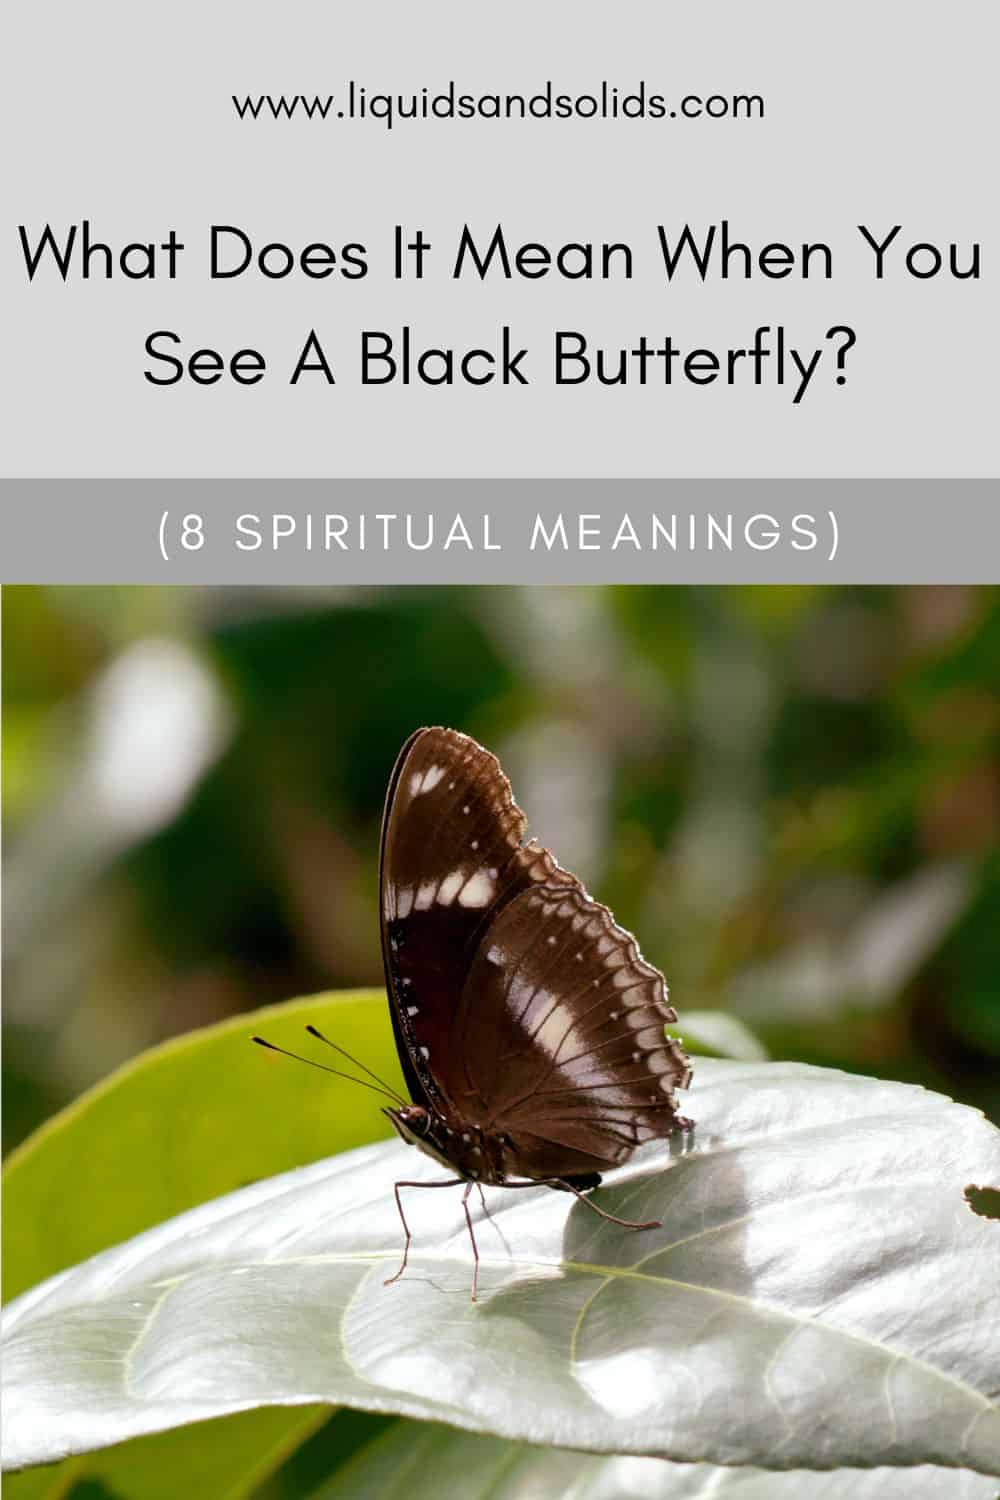  Mit jelent, ha fekete pillangót látsz? (8 spirituális jelentés)